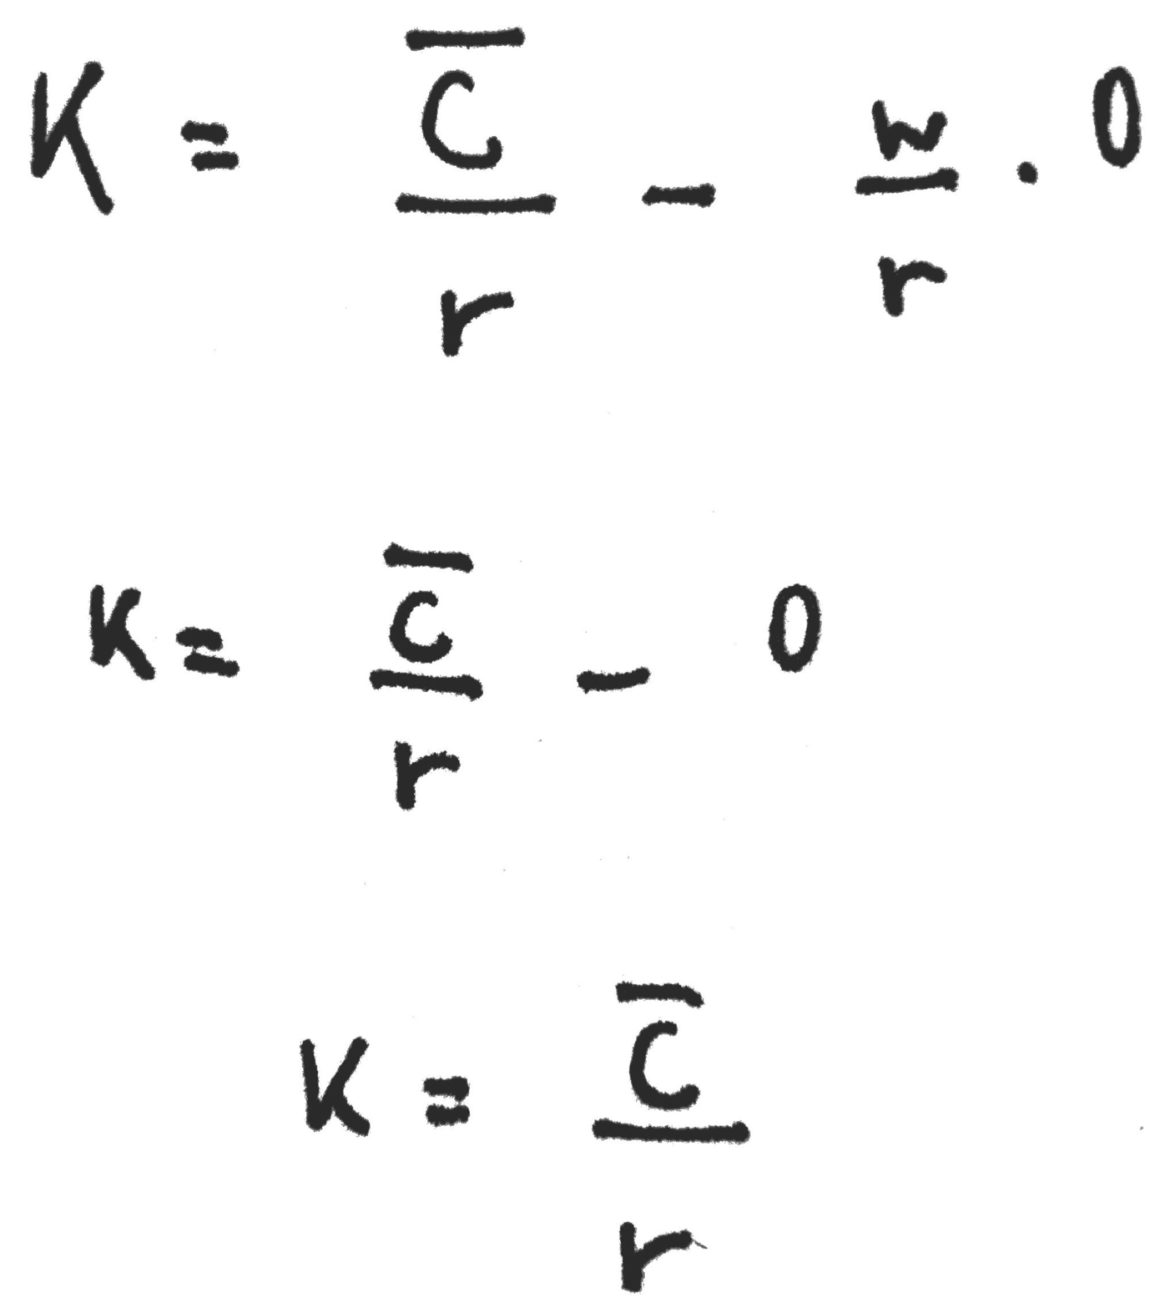 Intersezione dell'isocosto con l'asse K.